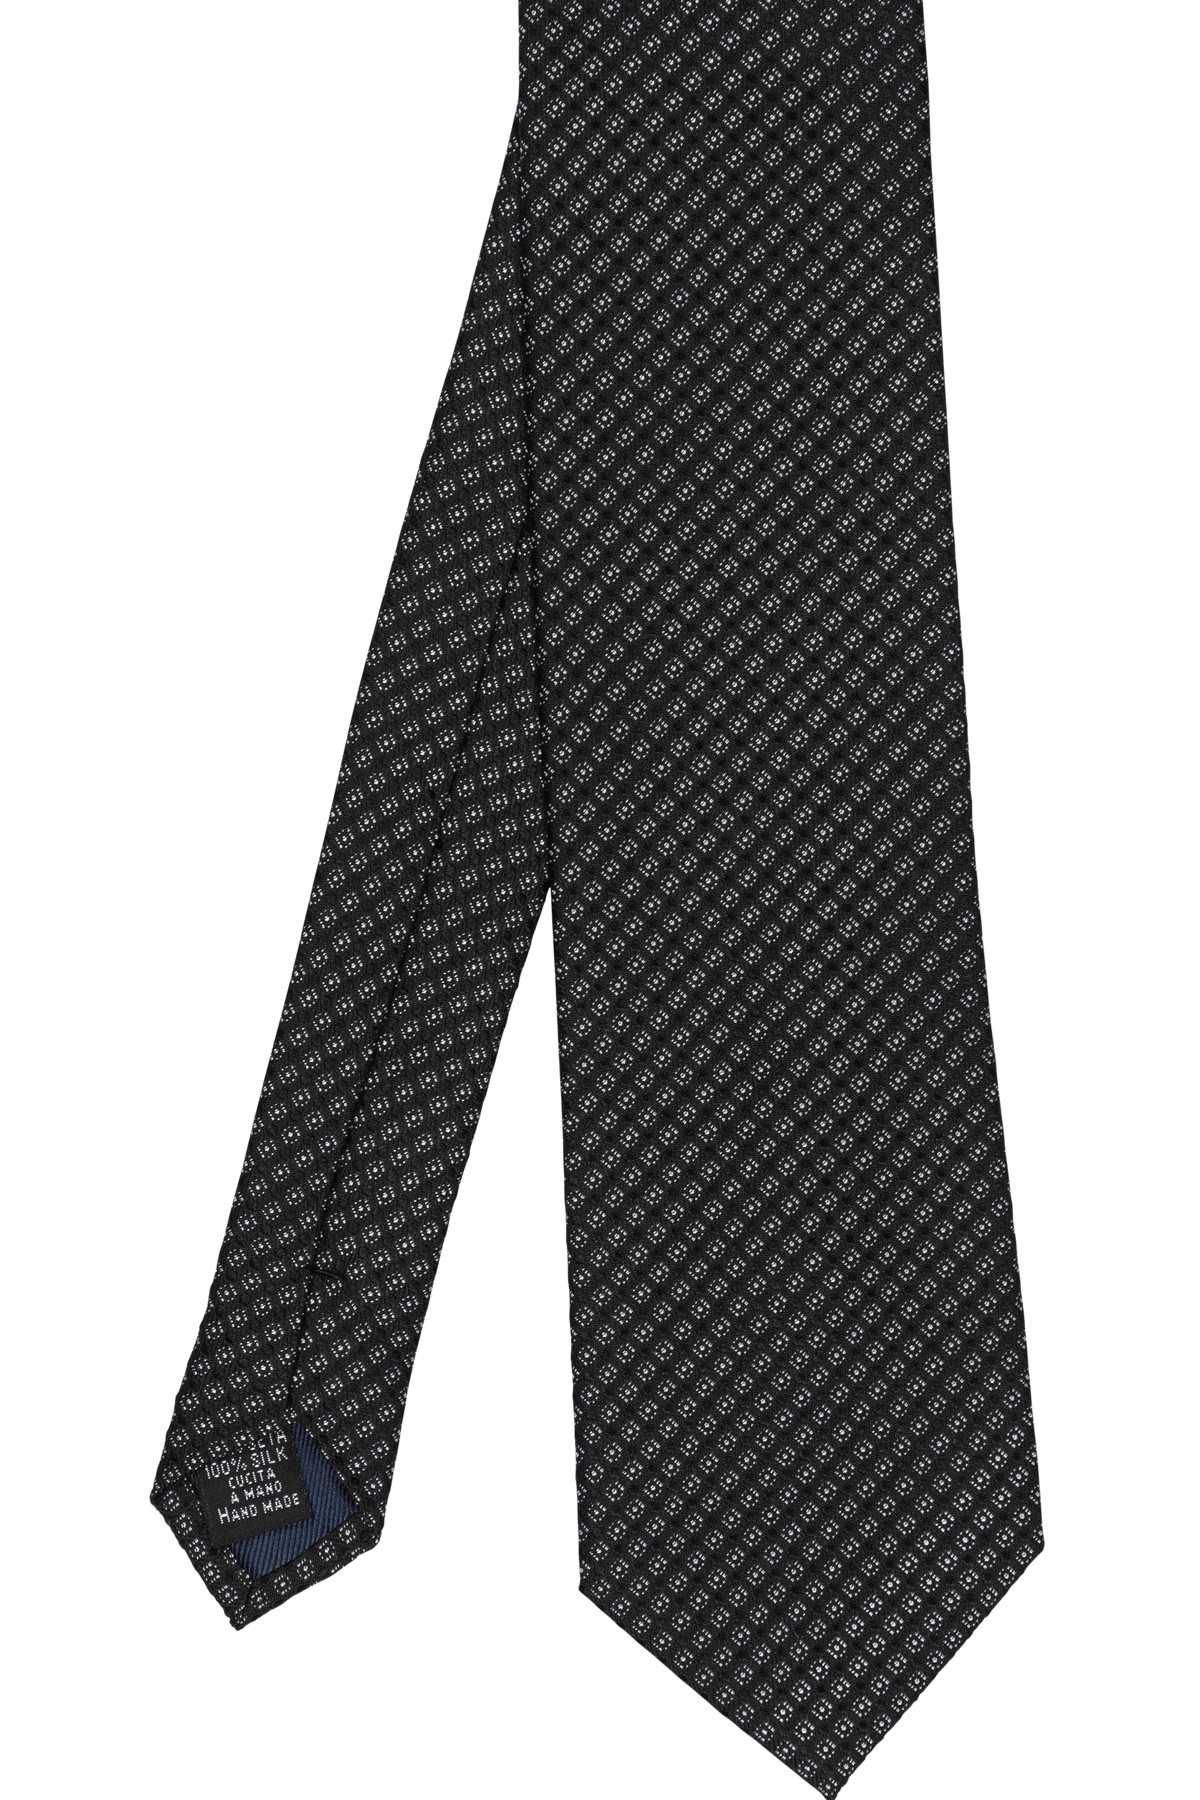 Cravate noire en soie imprimée